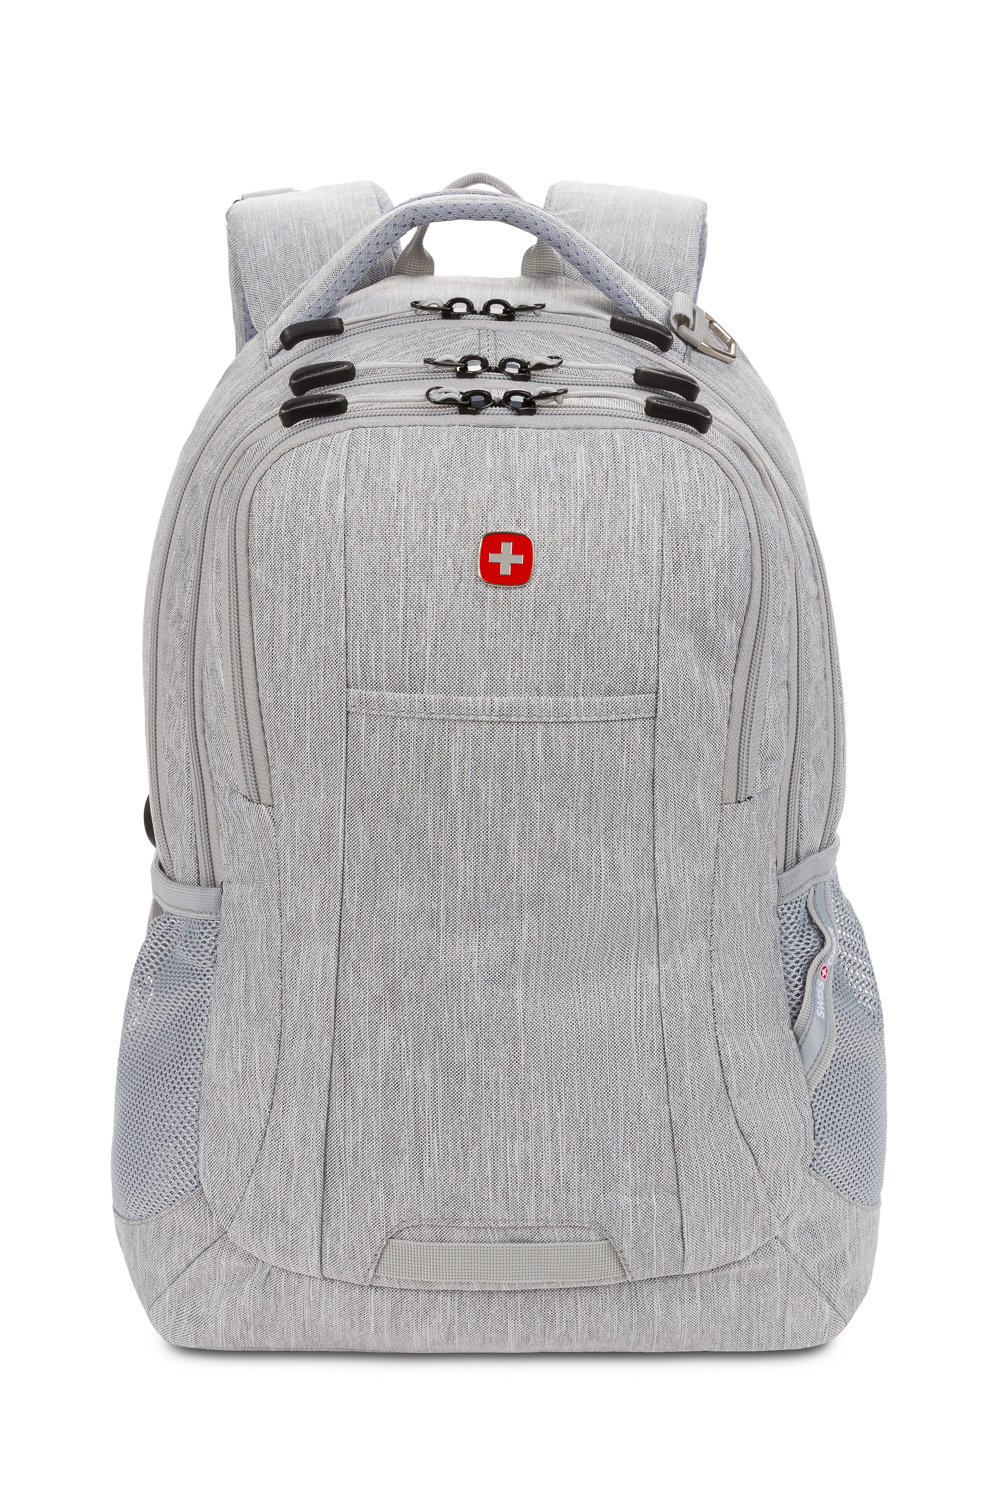 Swiss Gear Laptop Backpack (Black) : Amazon.in: Fashion